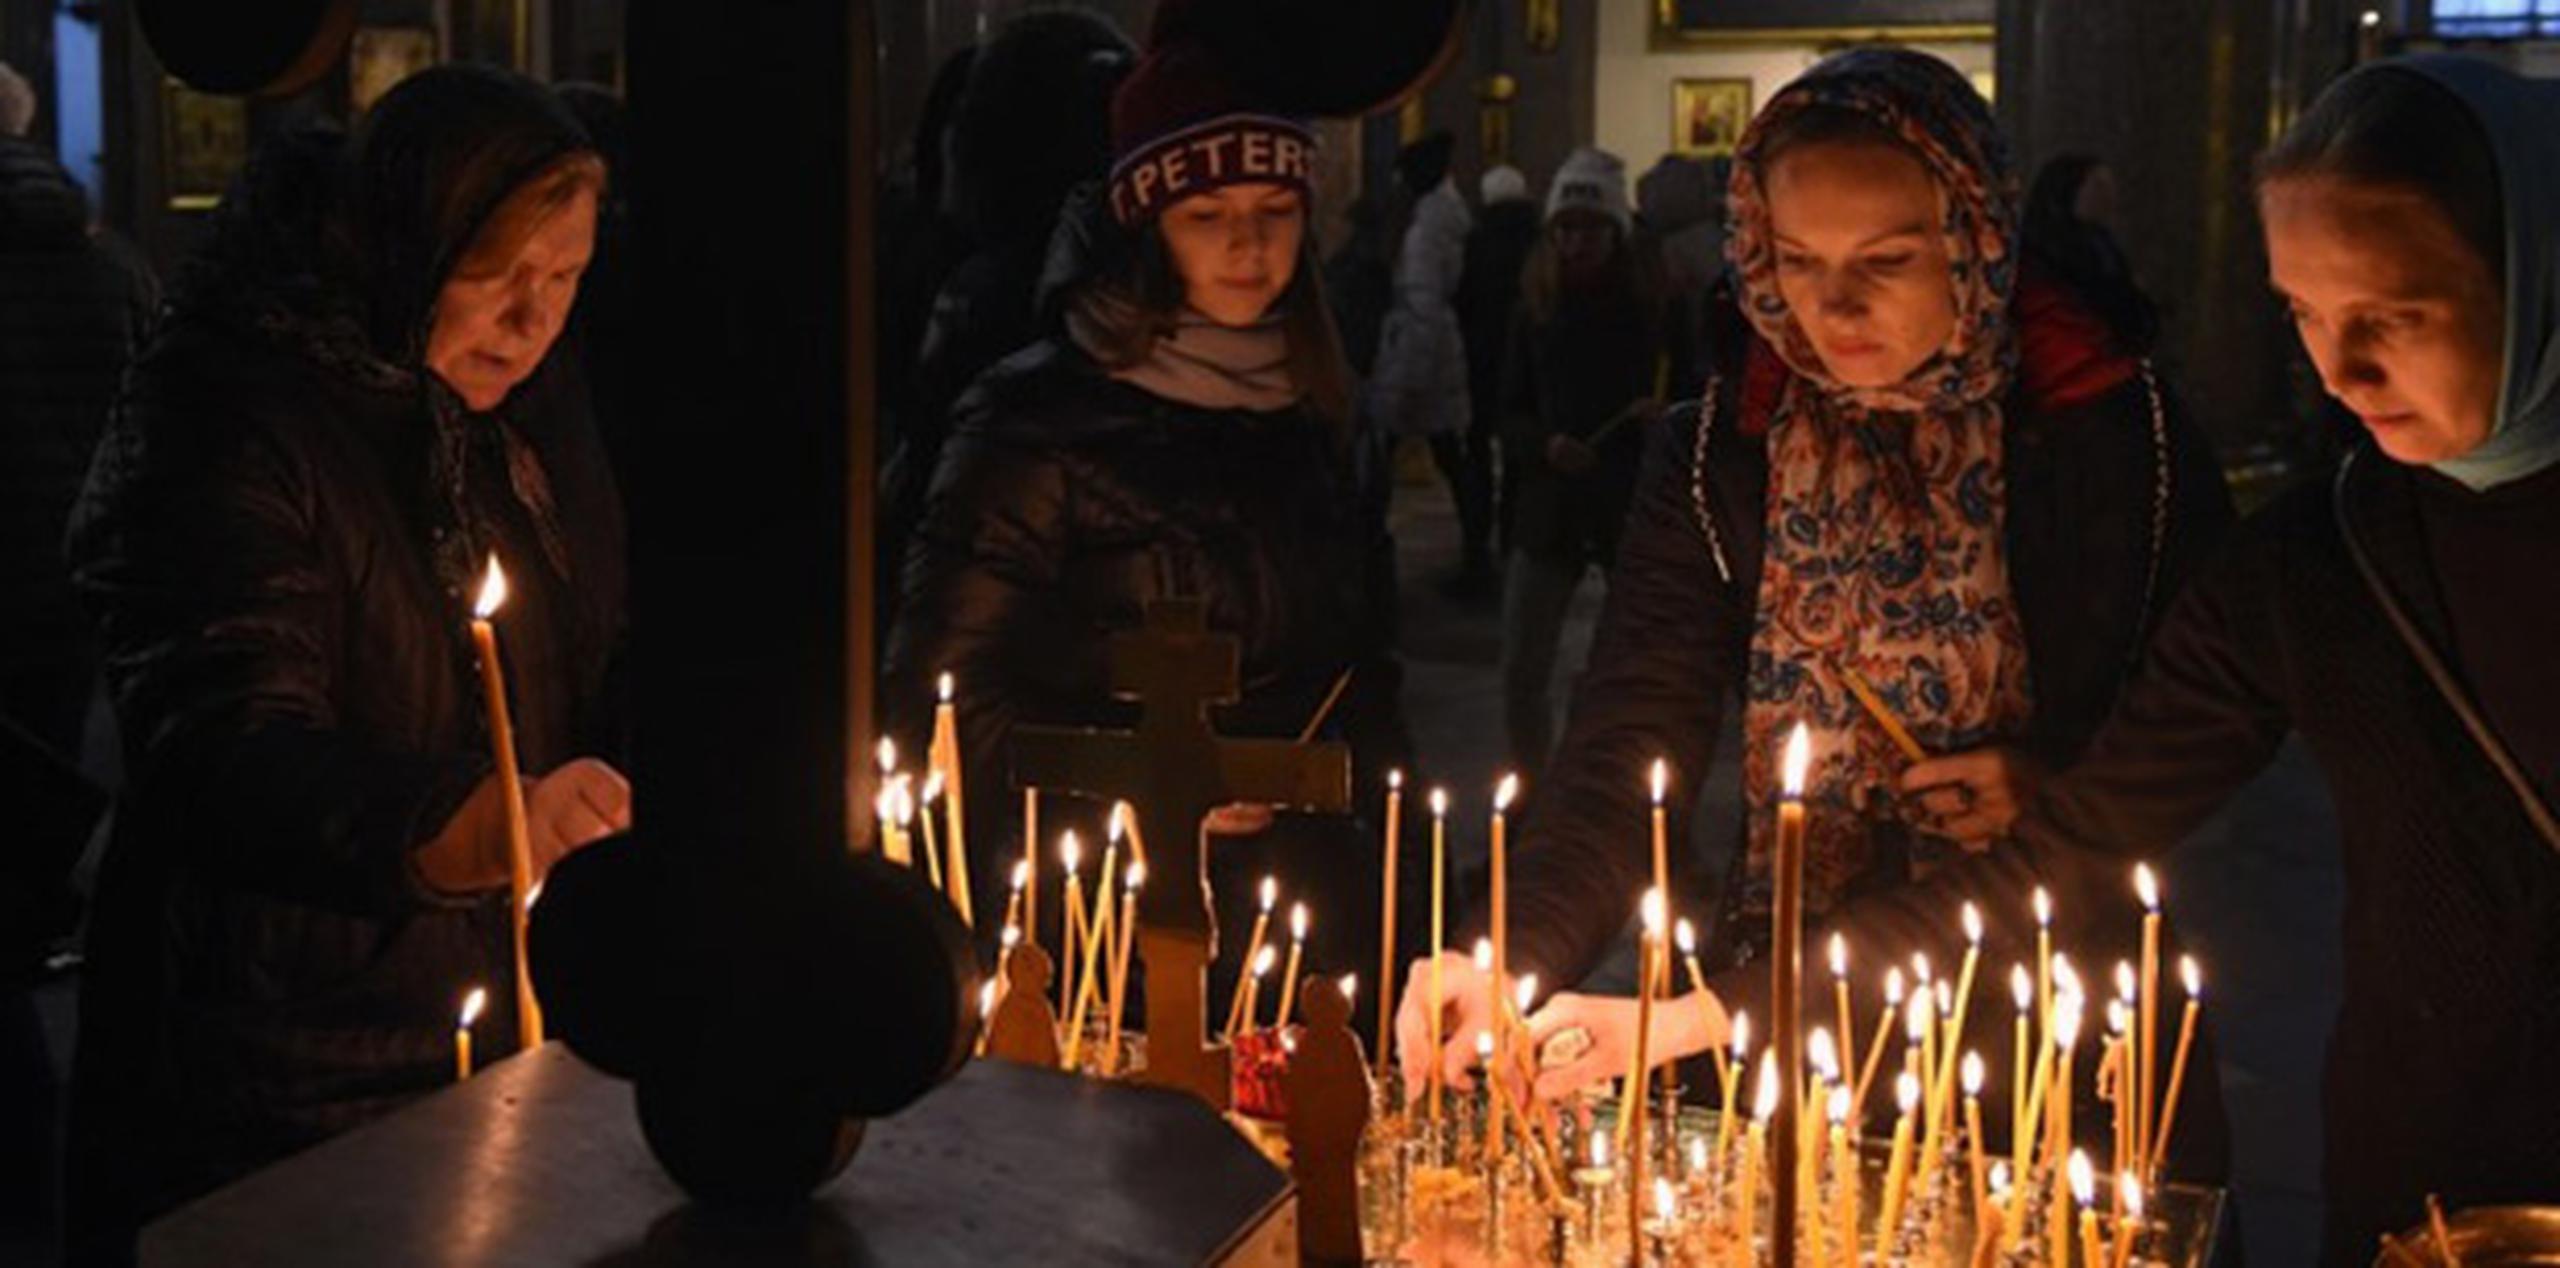 Ayer, en San Petersburgo, cientos de personas depositaron flores, fotos de las víctimas, animales de peluche y aviones de papel en el aeropuerto de la ciudad. Otros acudieron a iglesias y encendieron velas en memoria de los muertos. (AFP)